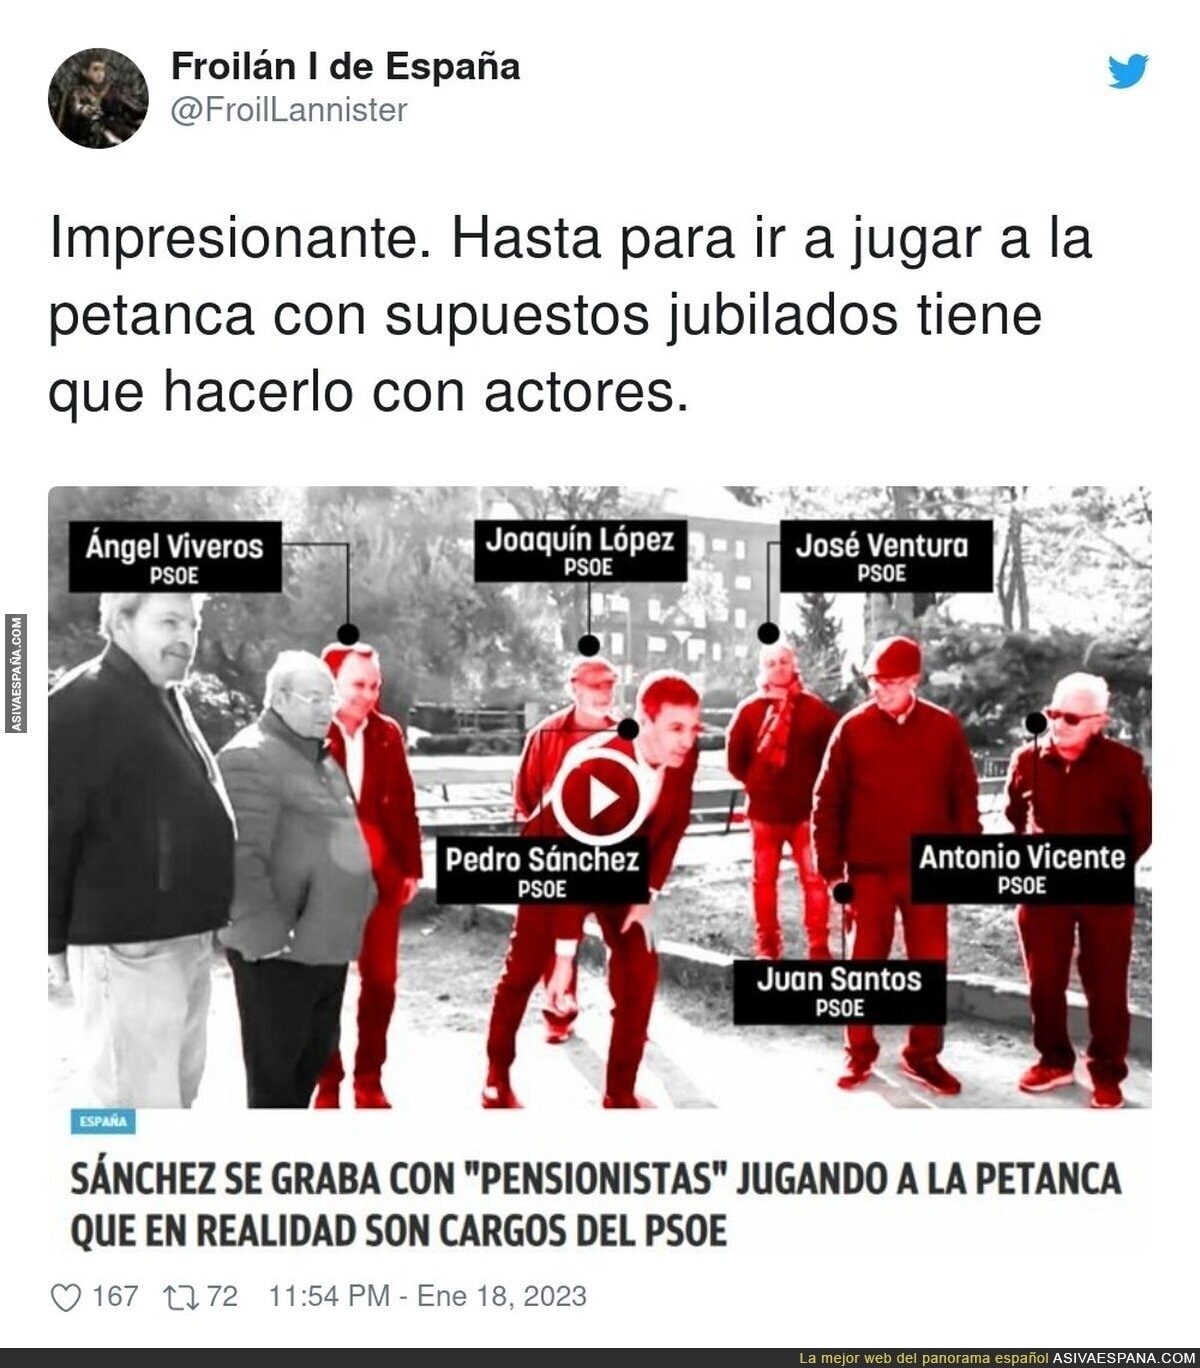 La farsa del PSOE